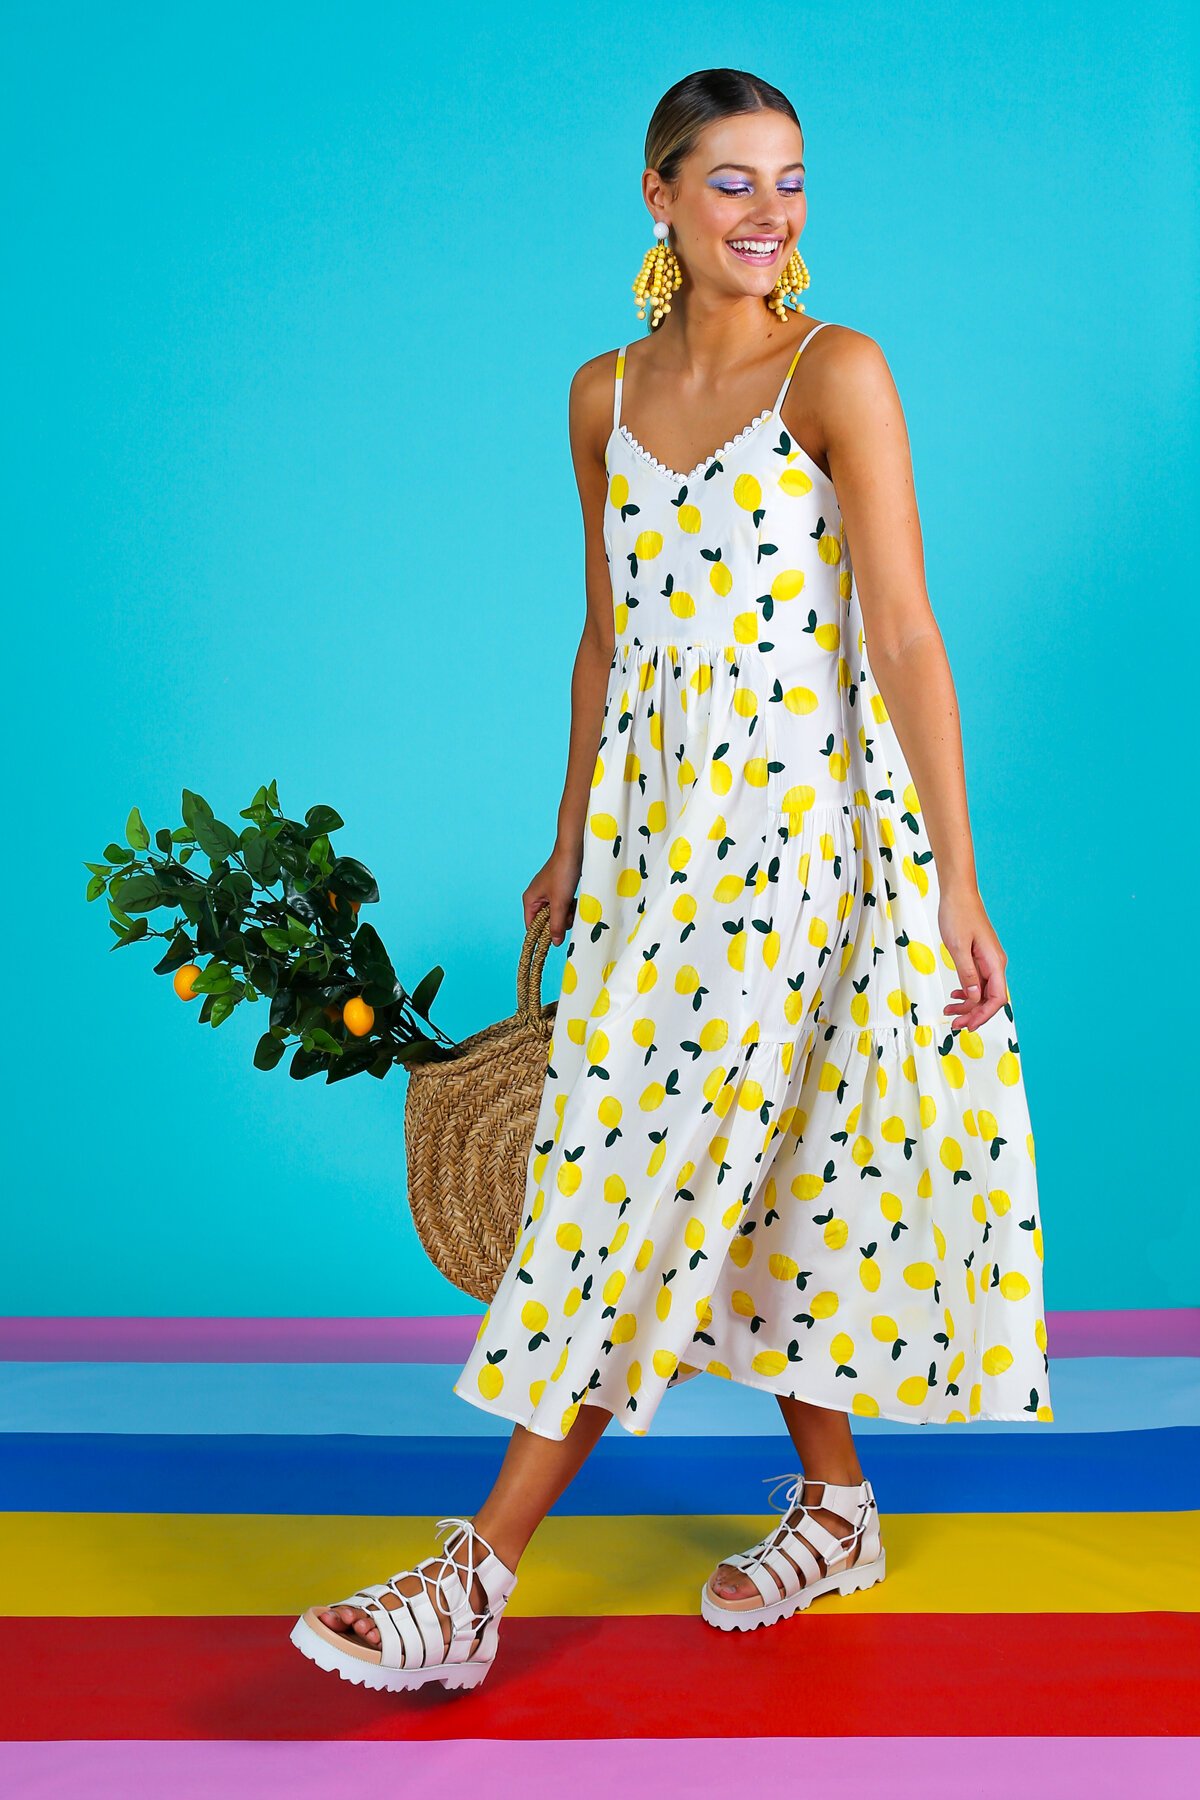 RISING SUNDRESS Dress - Coop-New In : Trelise Cooper Online - Lemonade ...